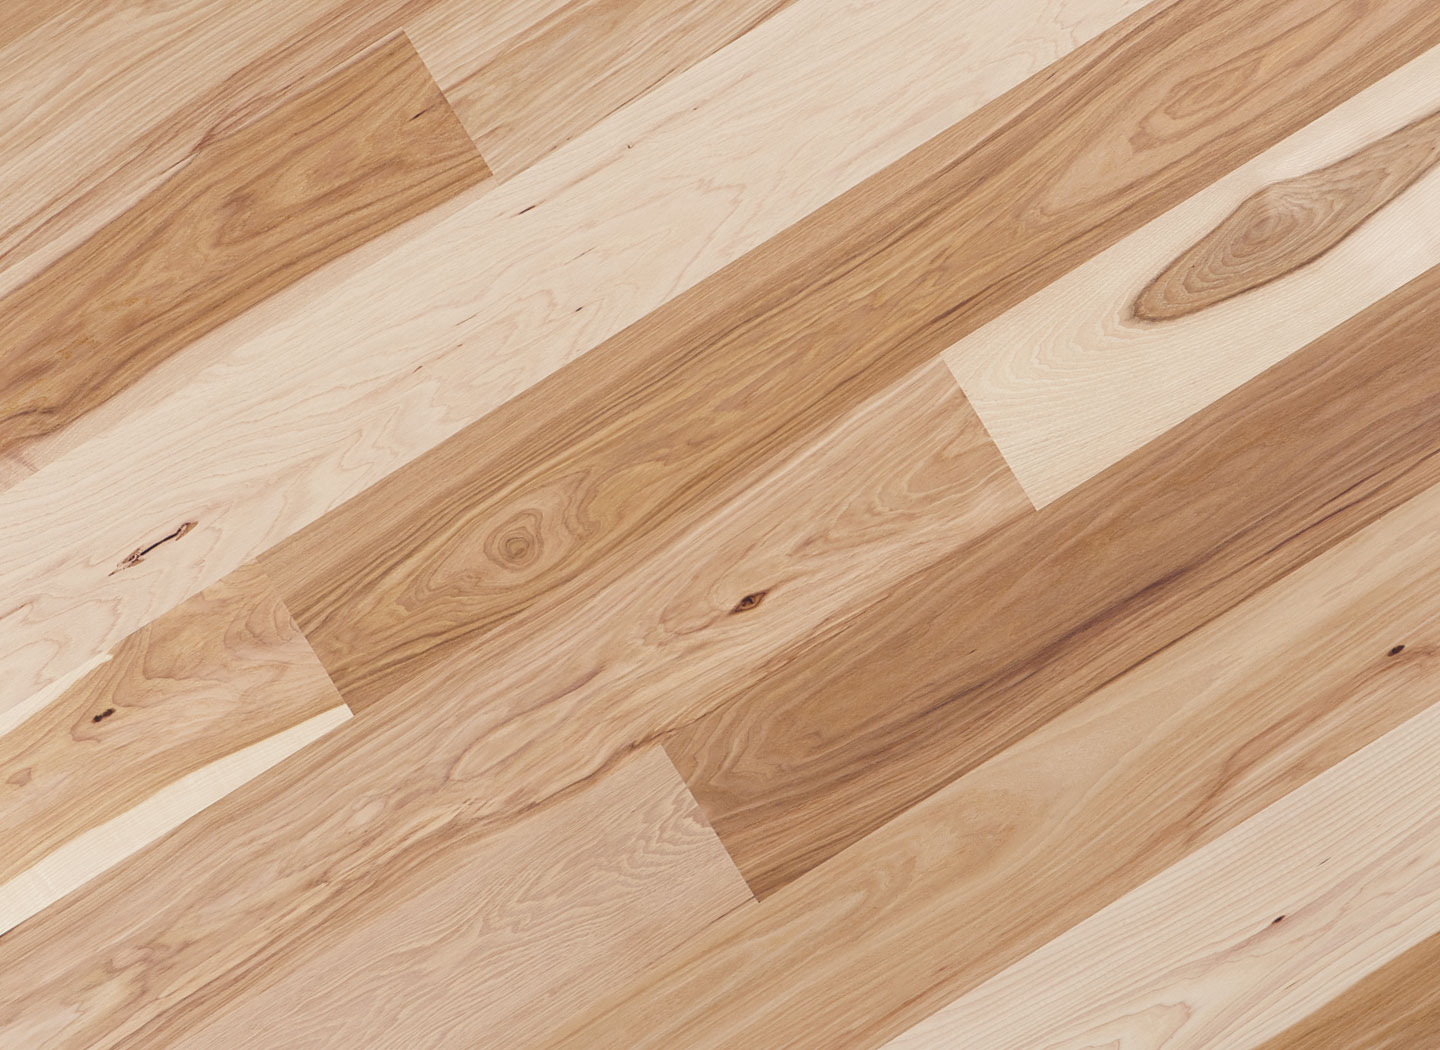 Hickory Pecan Flooring Saroyan Hardwoods, Select Grade Hickory Hardwood Flooring